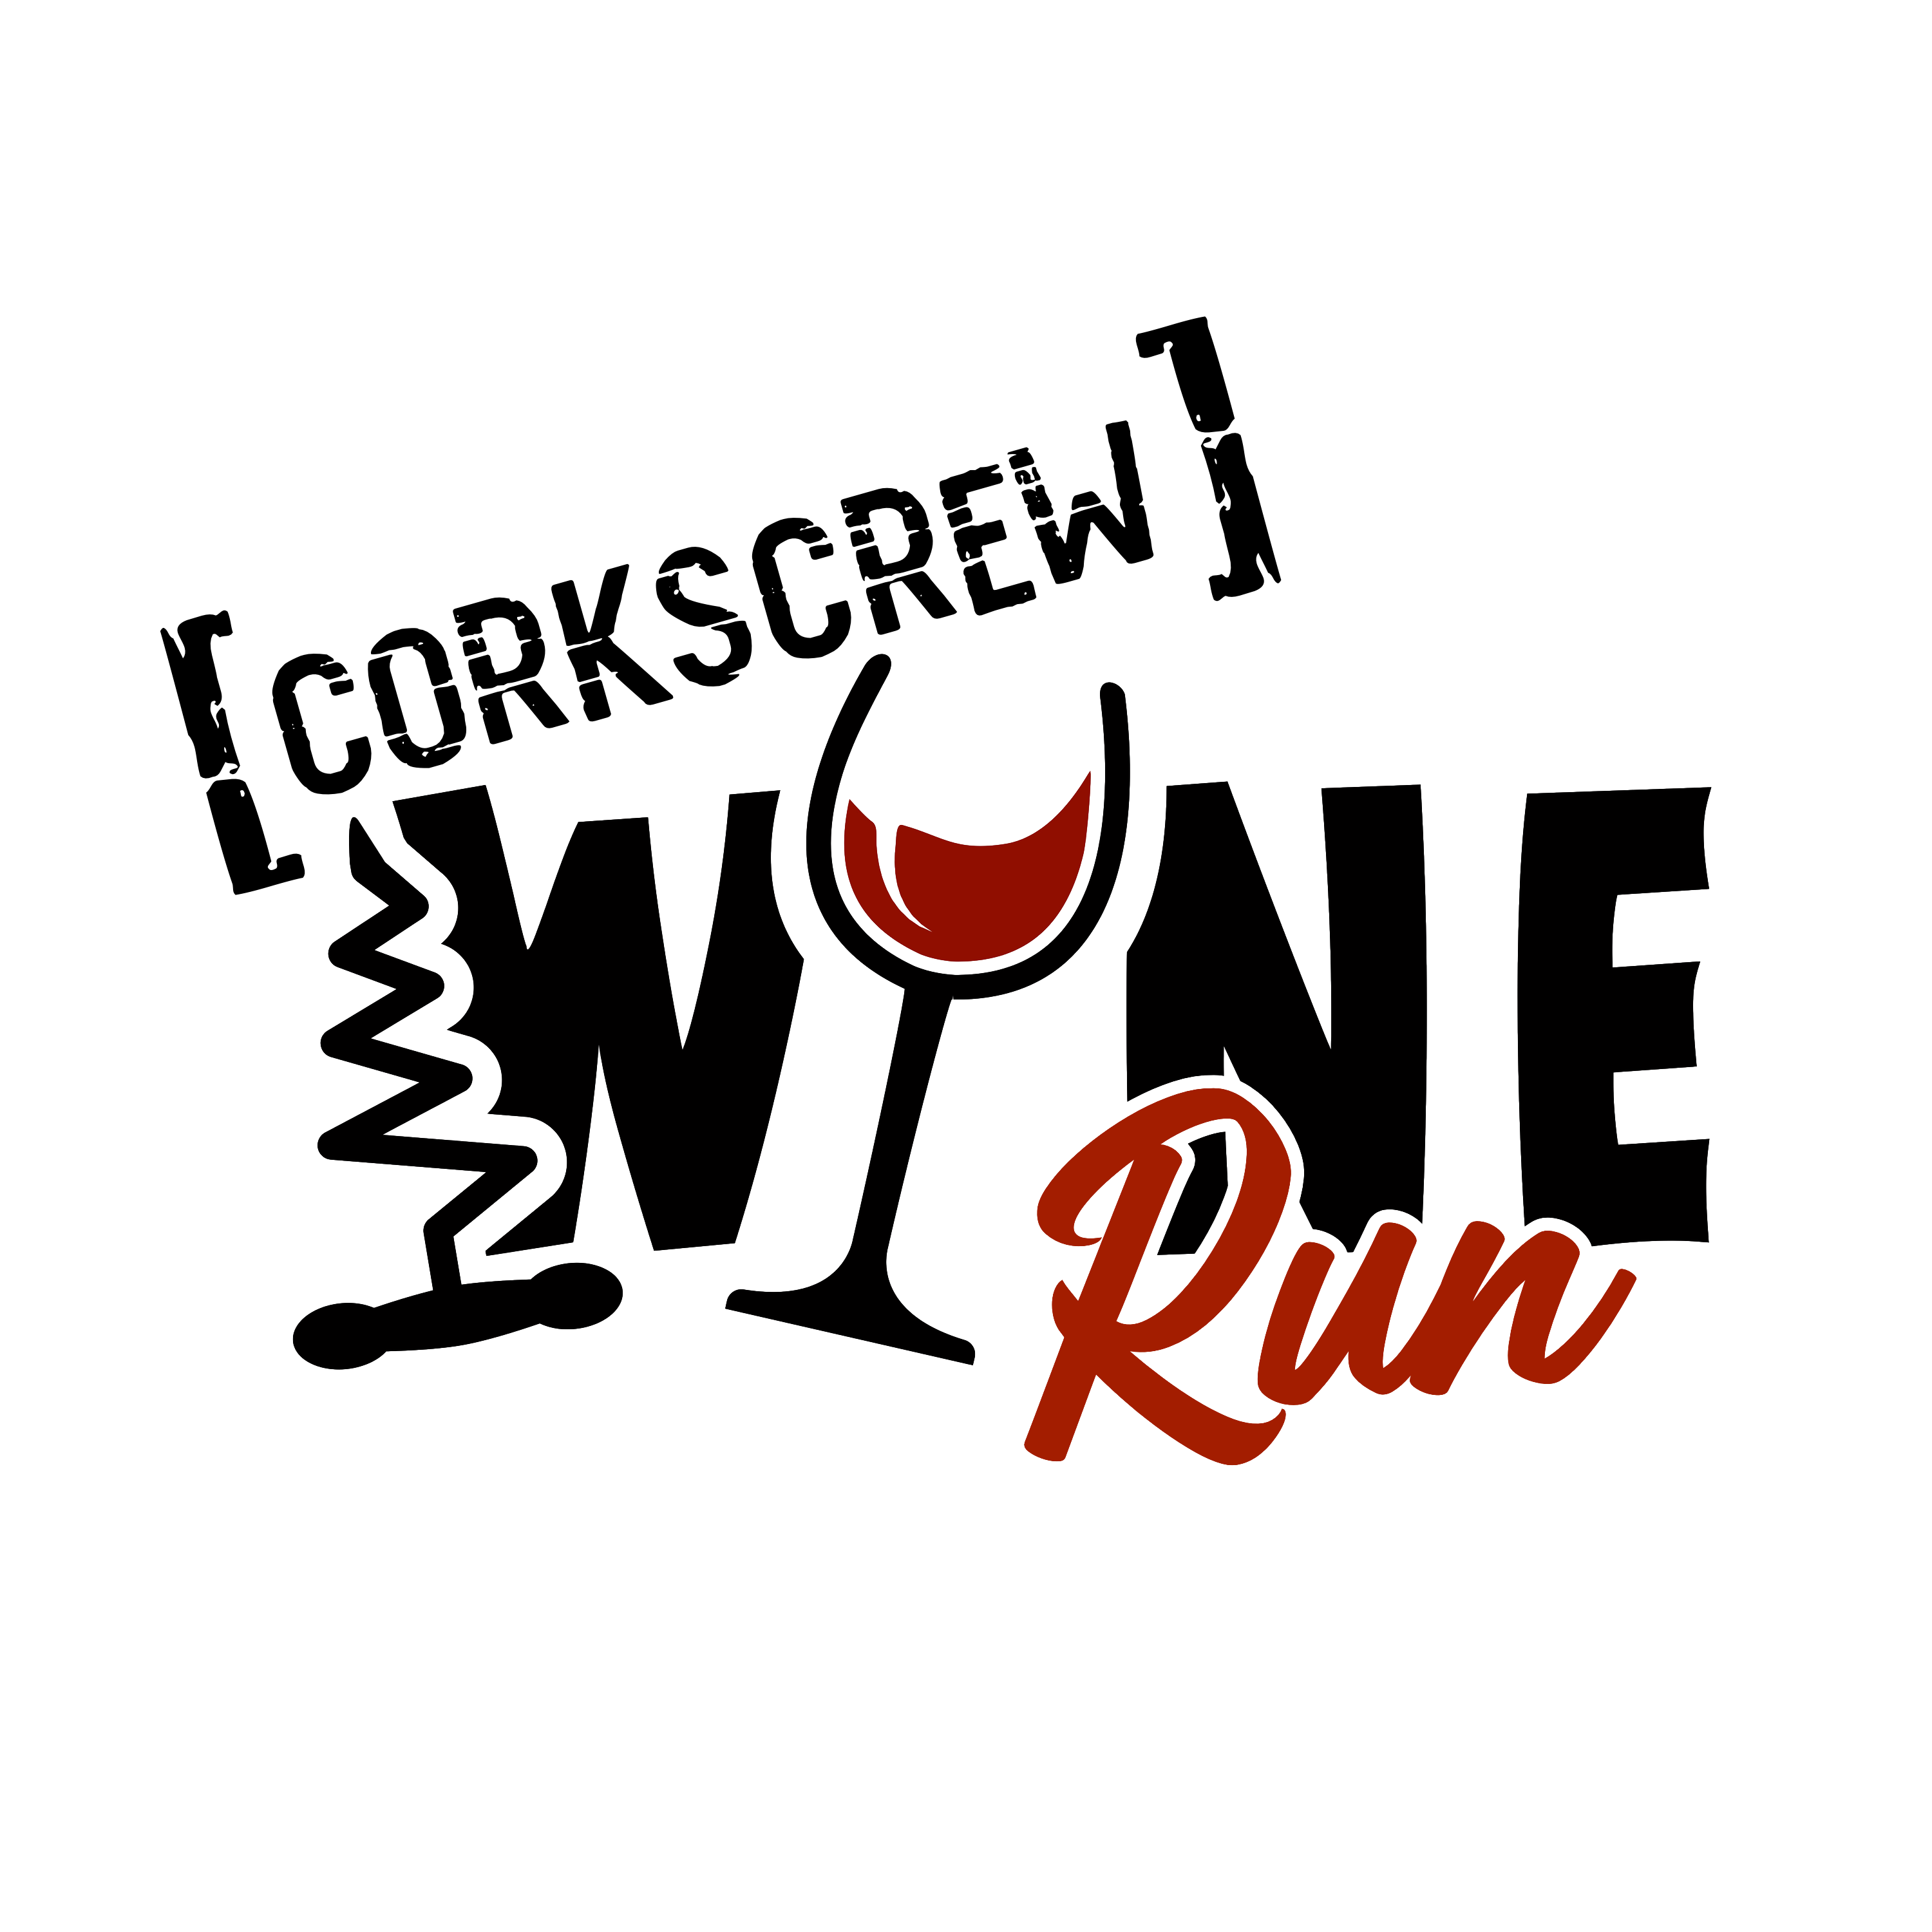 Corkscrew Wine Run logo on RaceRaves